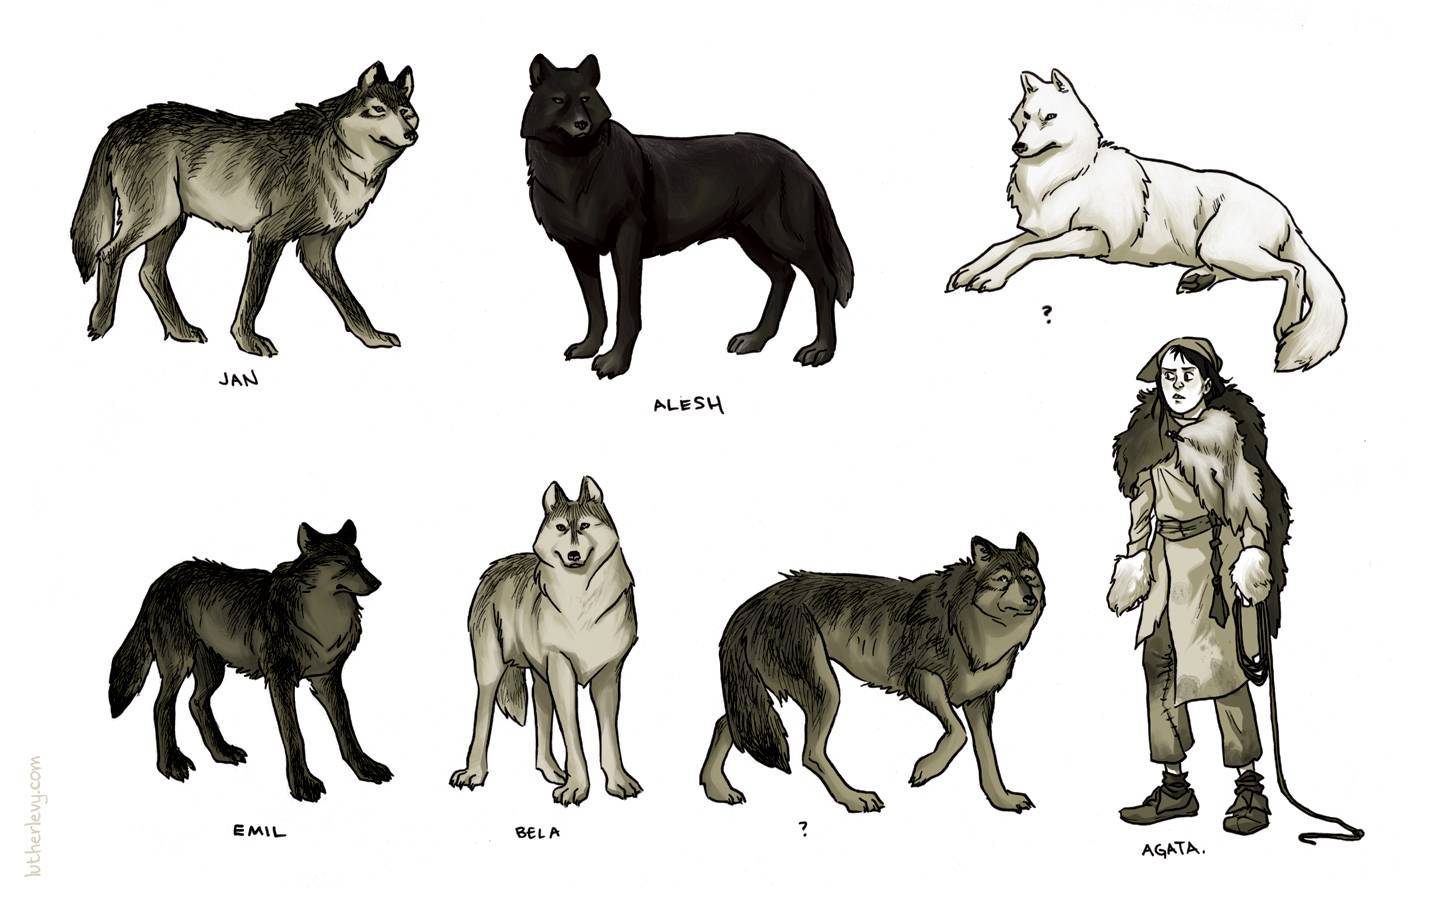 Список пород собак, похожих на волков.
список пород собак, похожих на волков.